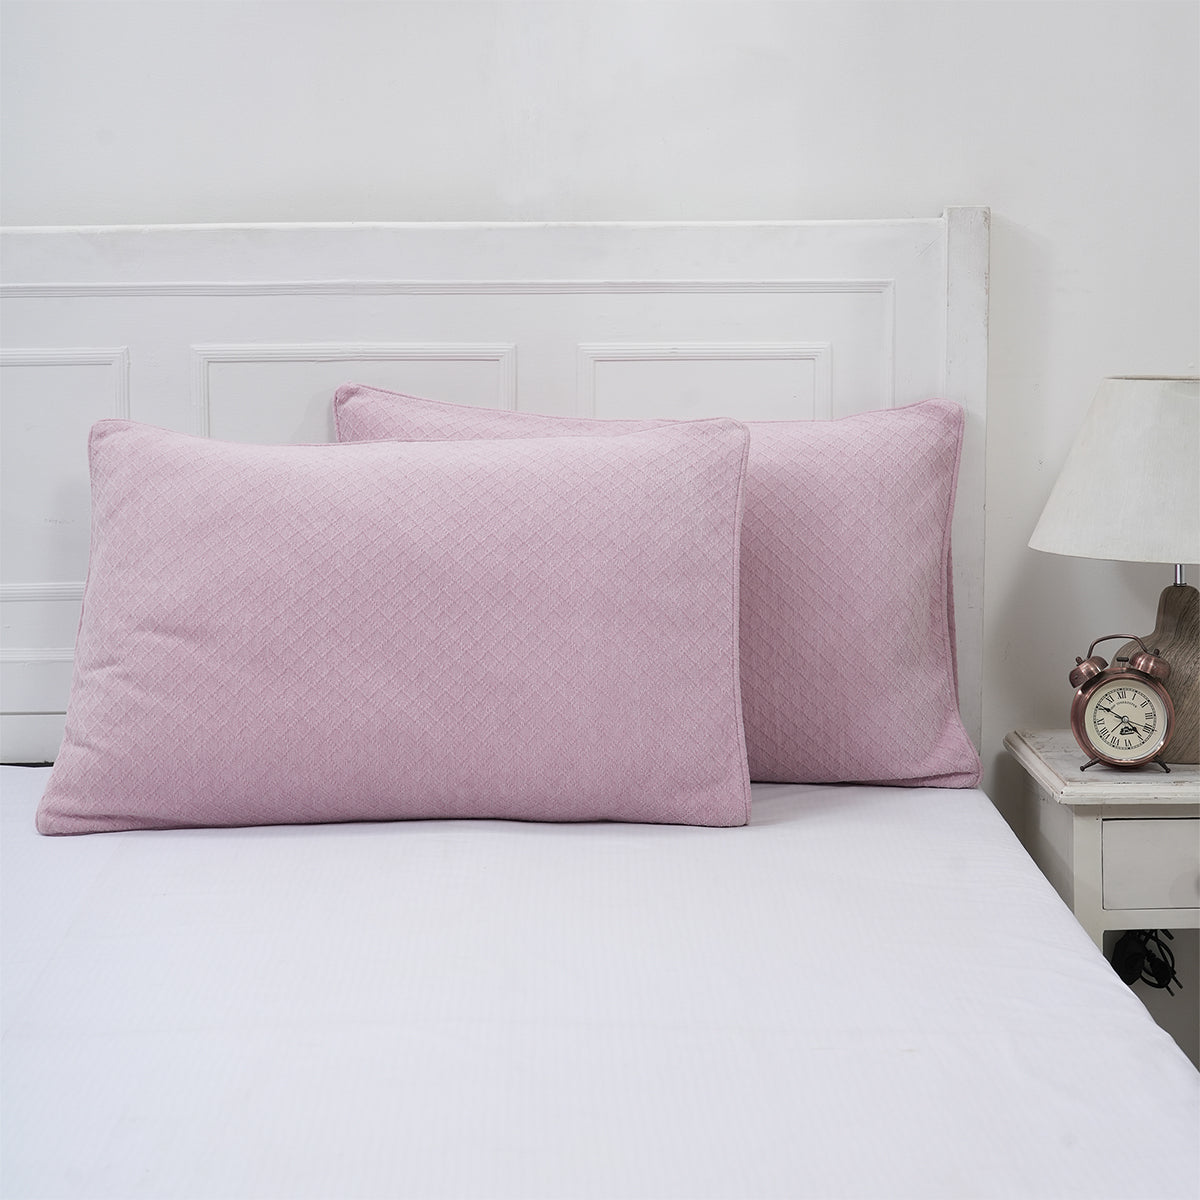 Blaize 100% Cotton Solid Weave Purple Pillow Sham Set